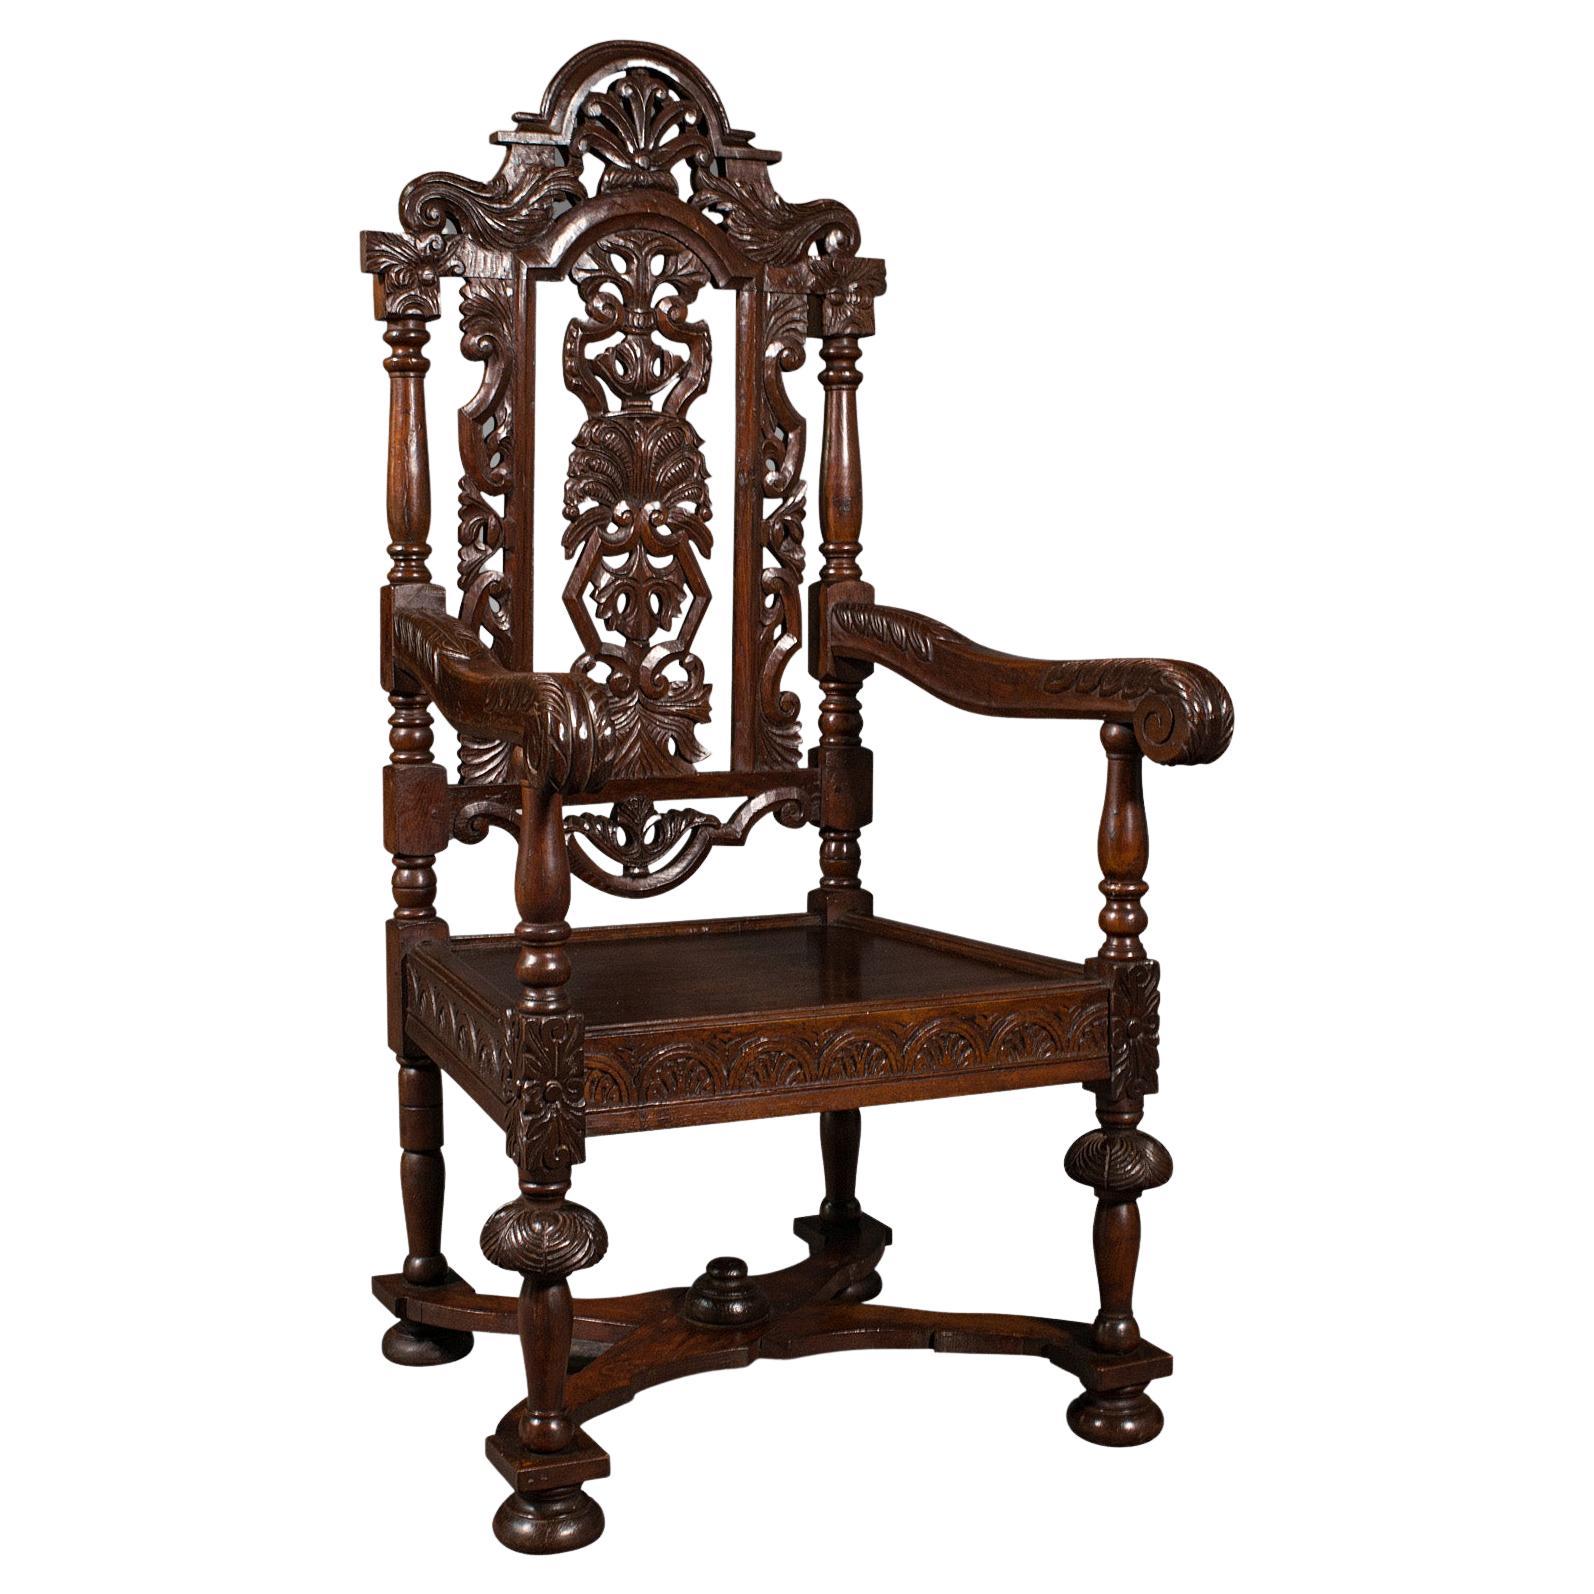 Ancienne chaise trône sculptée, chêne écossais, sculptée, assise arquée, gothique, victorienne